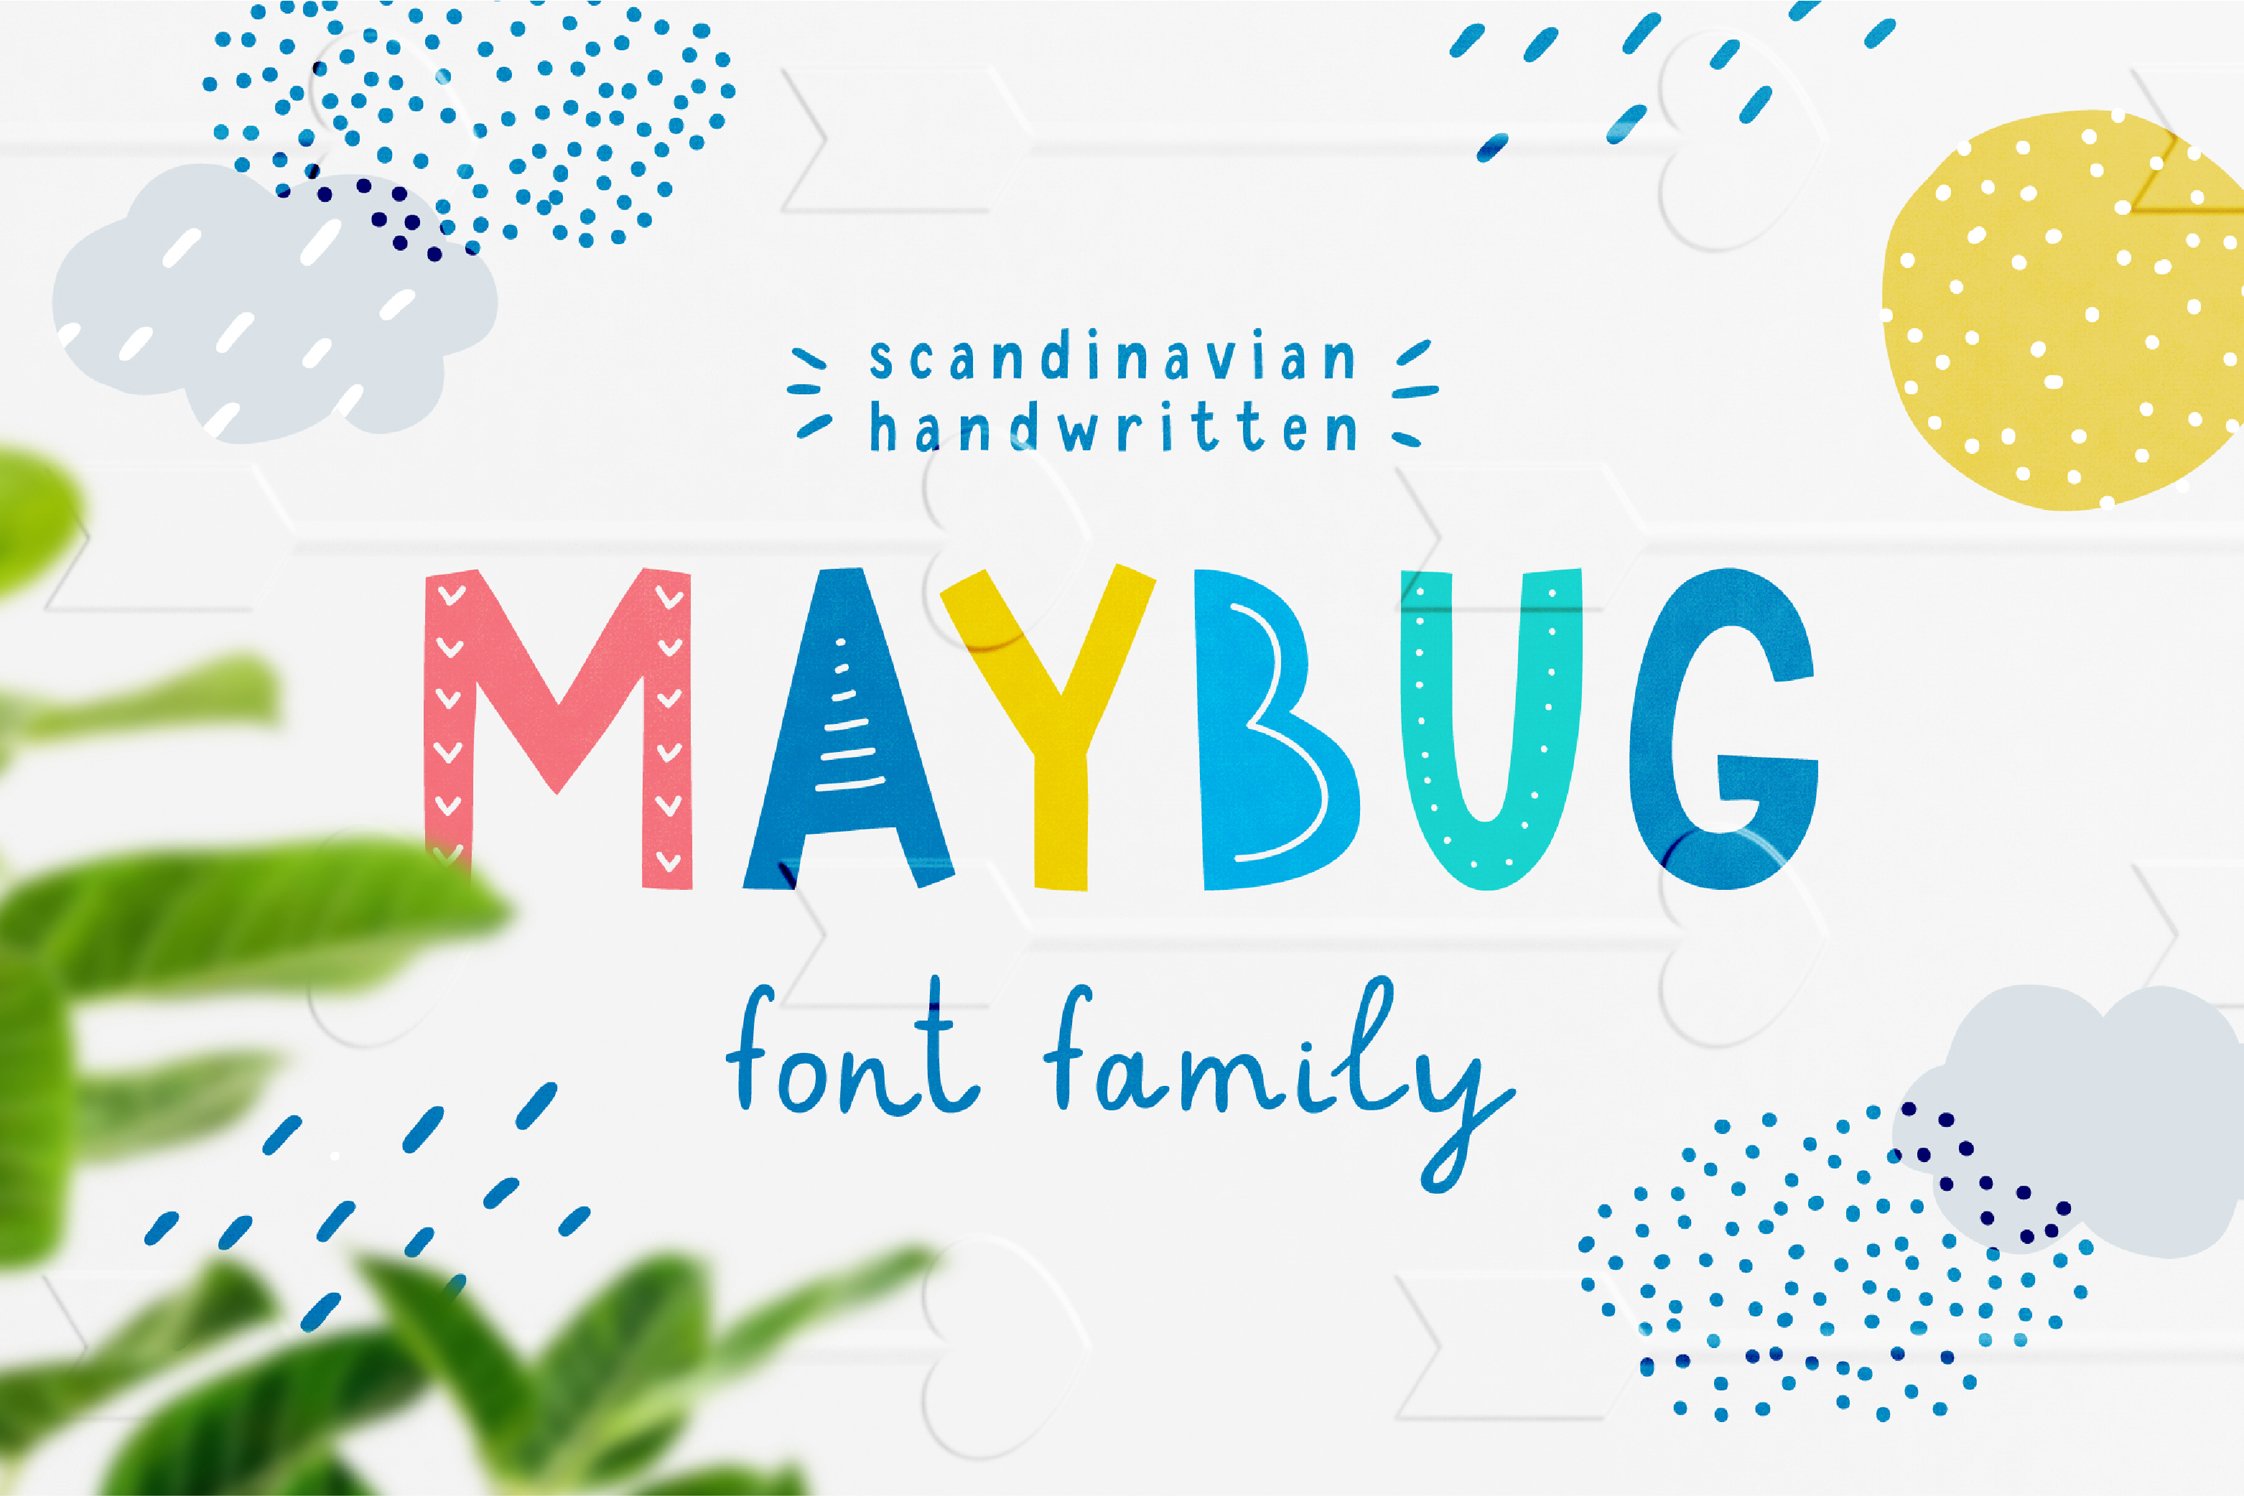 Maybug Latin & Cyrillic scandi fonts cover image.